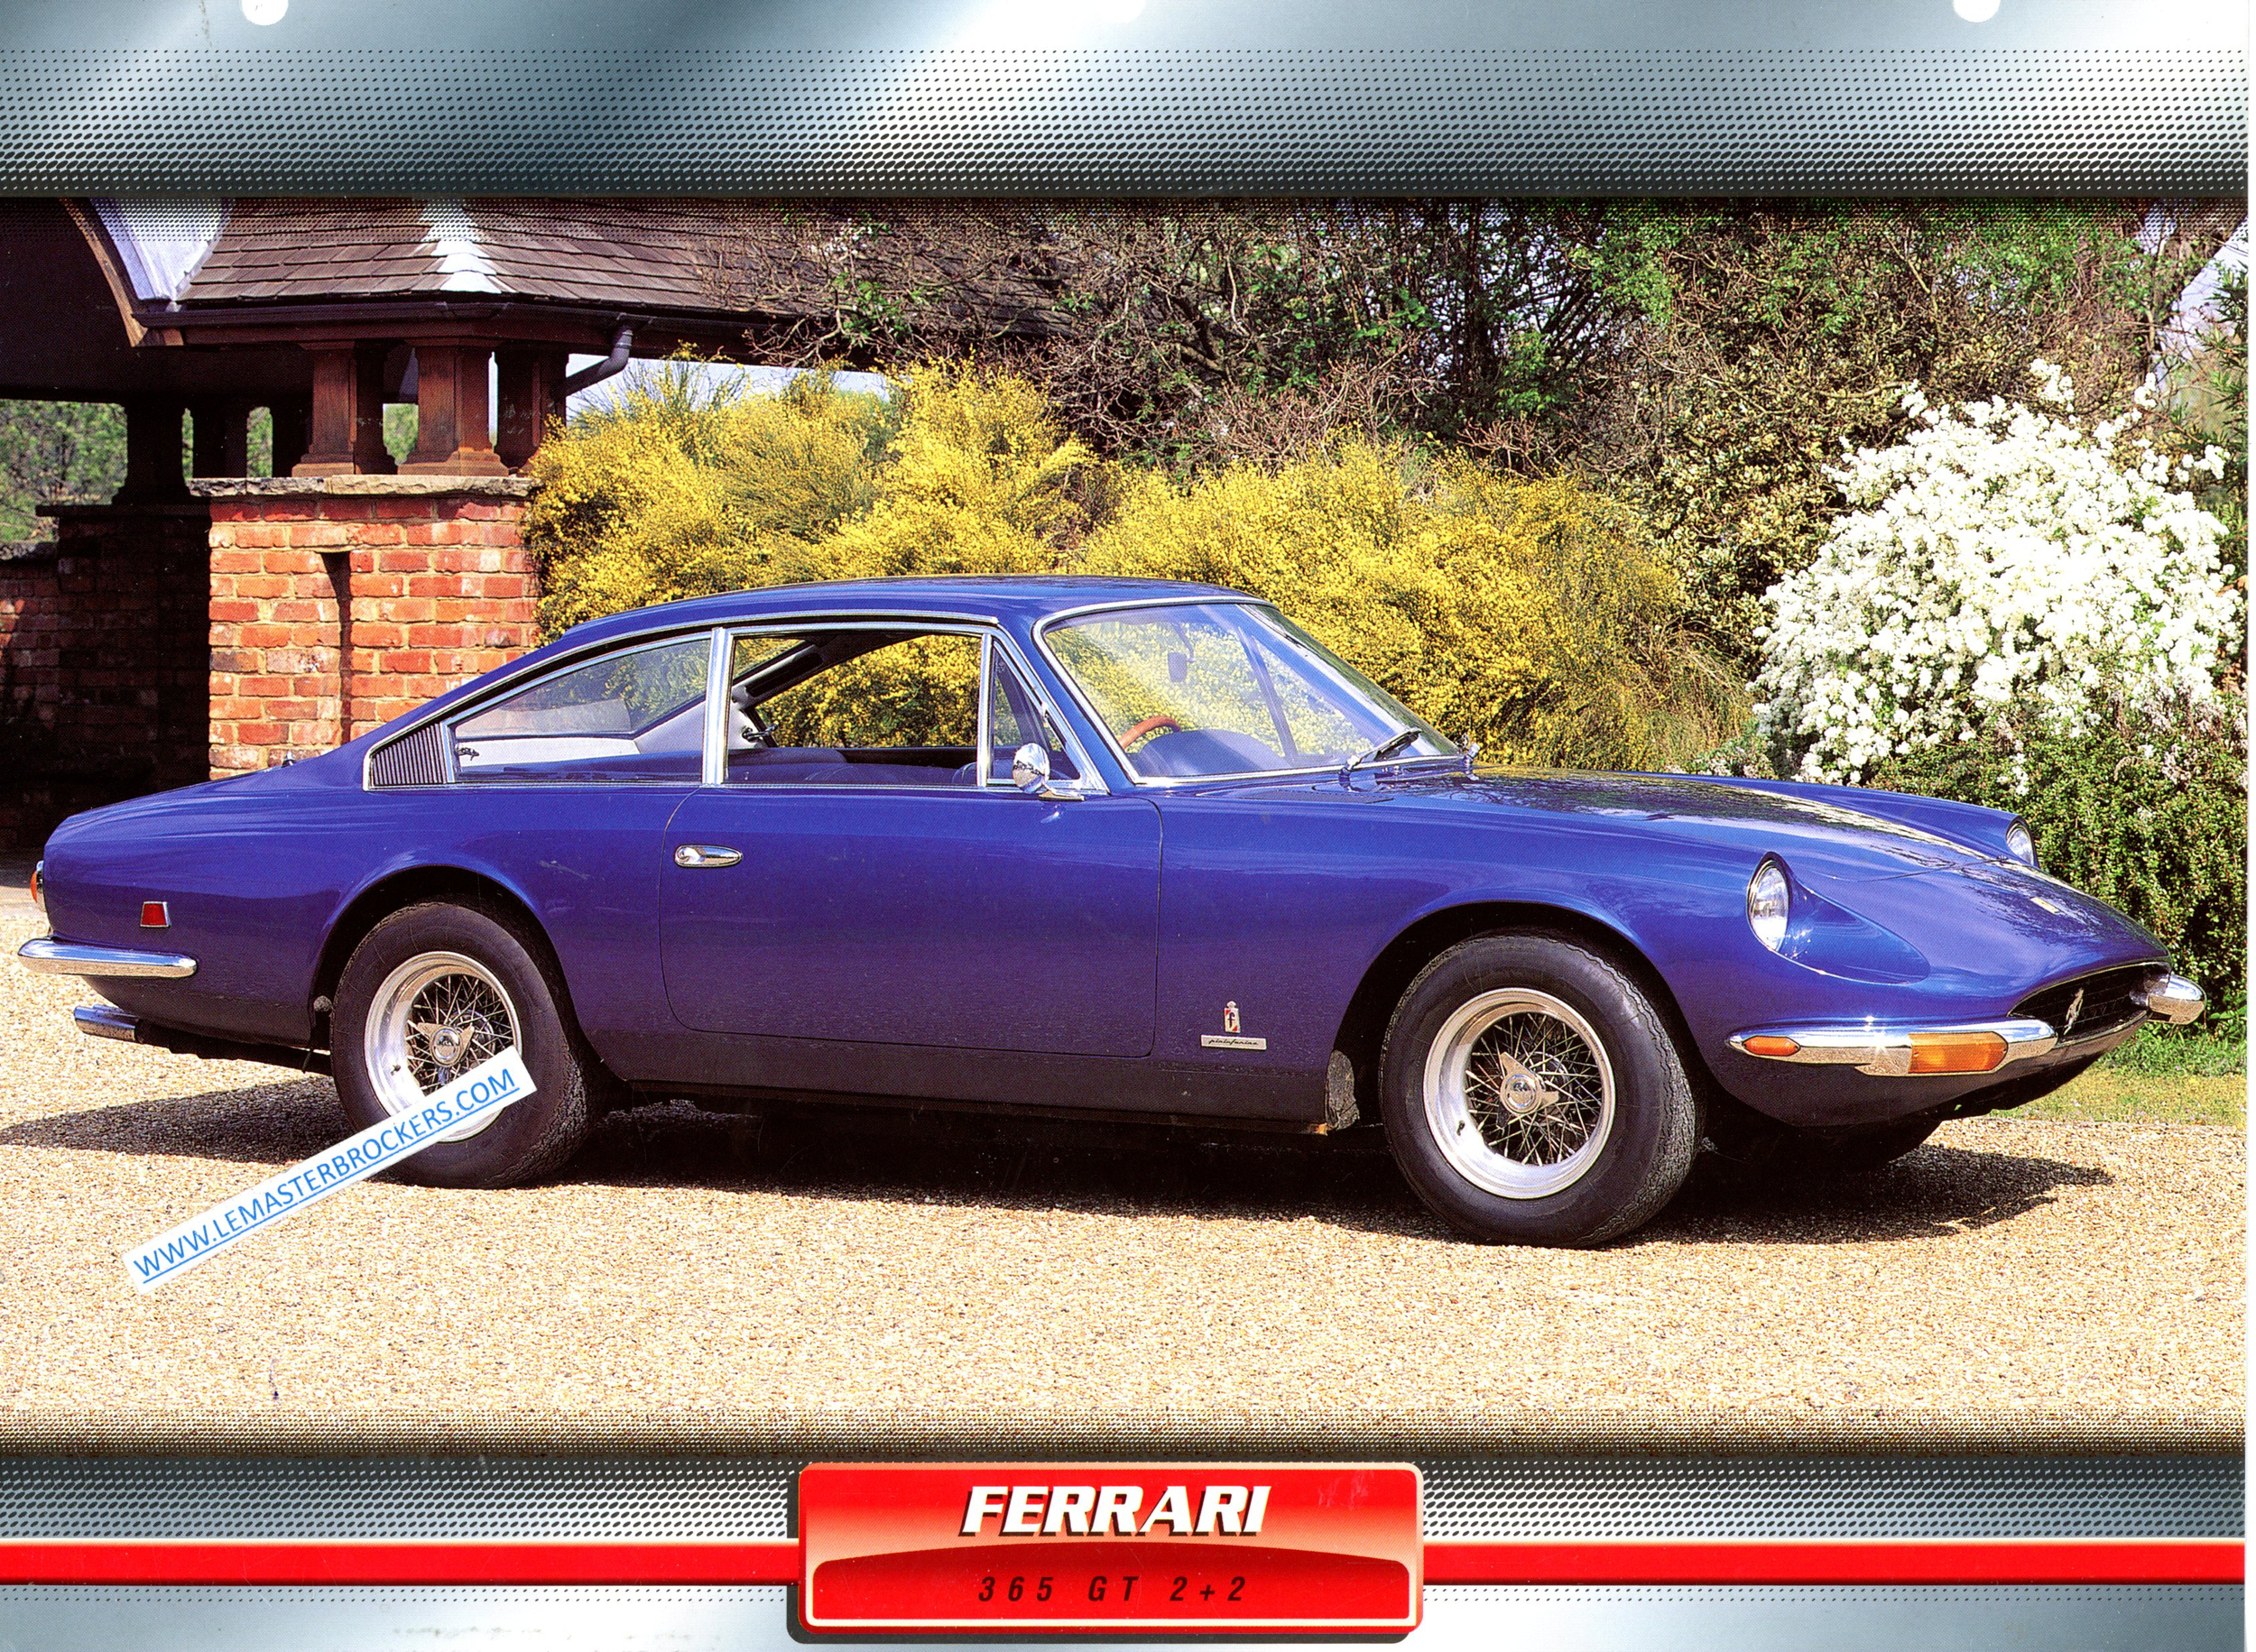 FERRARI 365 GT 2 2 1970 FICHE COLLECTION VOITURE DE SPORT